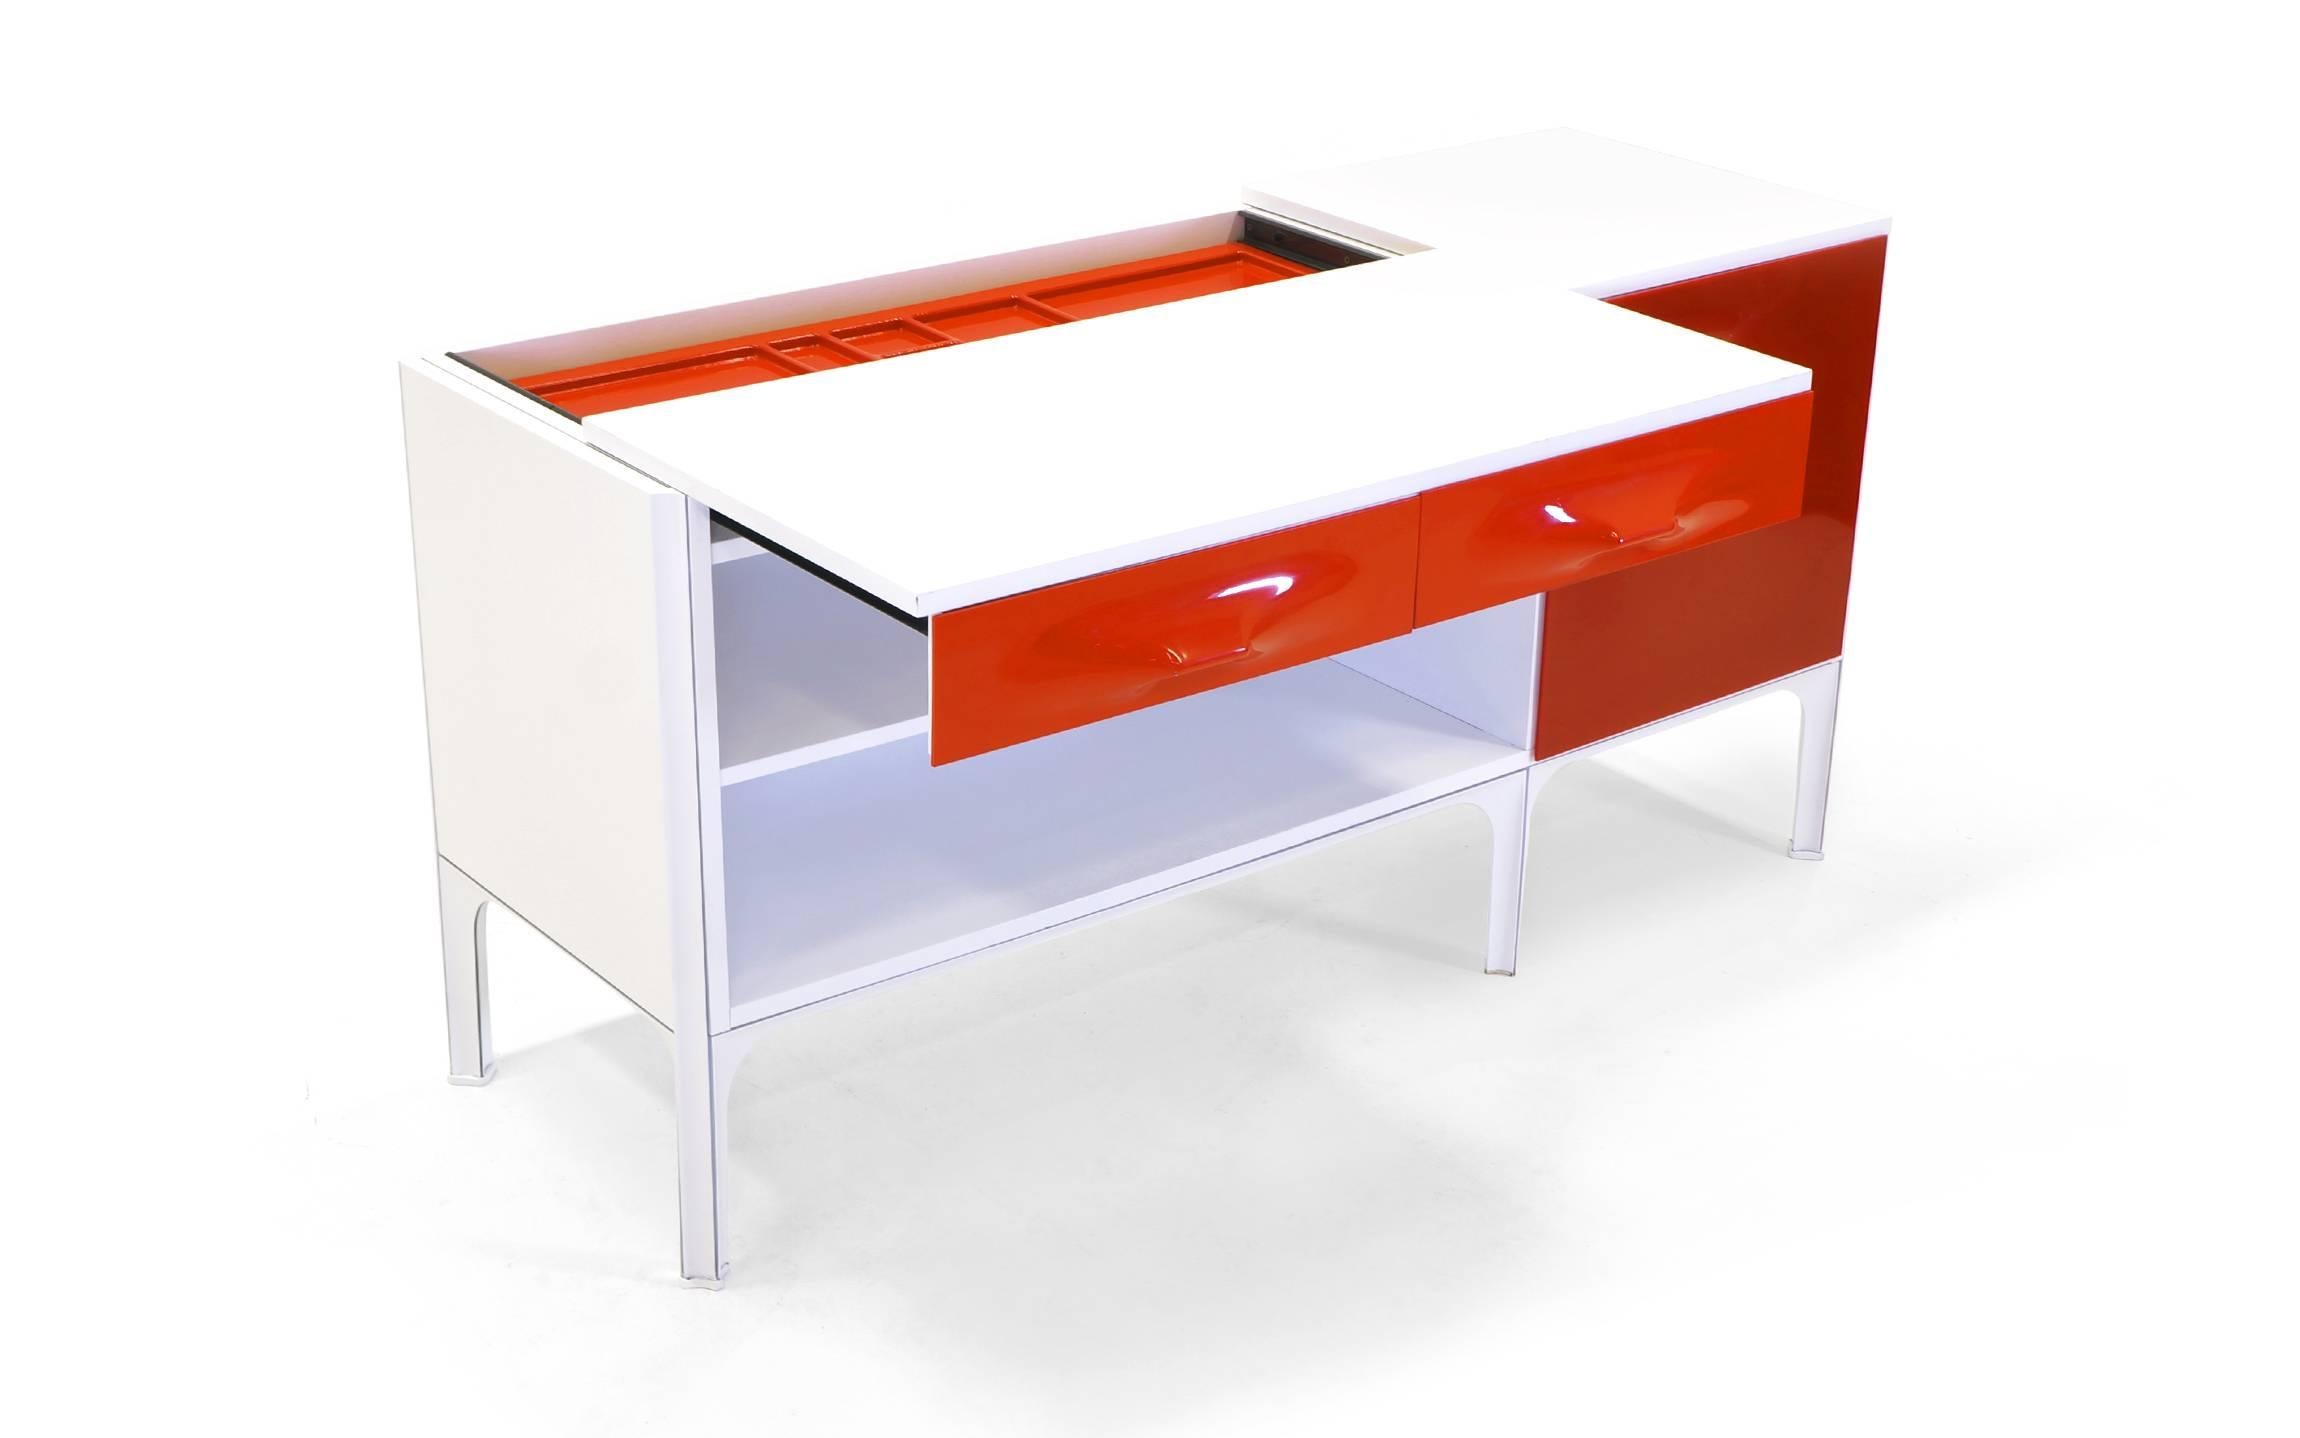 Rare bureau Raymond Loewy DF2000 en rouge, orange et blanc. Les photos montrent comment le plateau du bureau glisse vers l'avant pour dégager de l'espace pour une chaise et permet également de ranger des objets. La porte en plastique moulé rouge